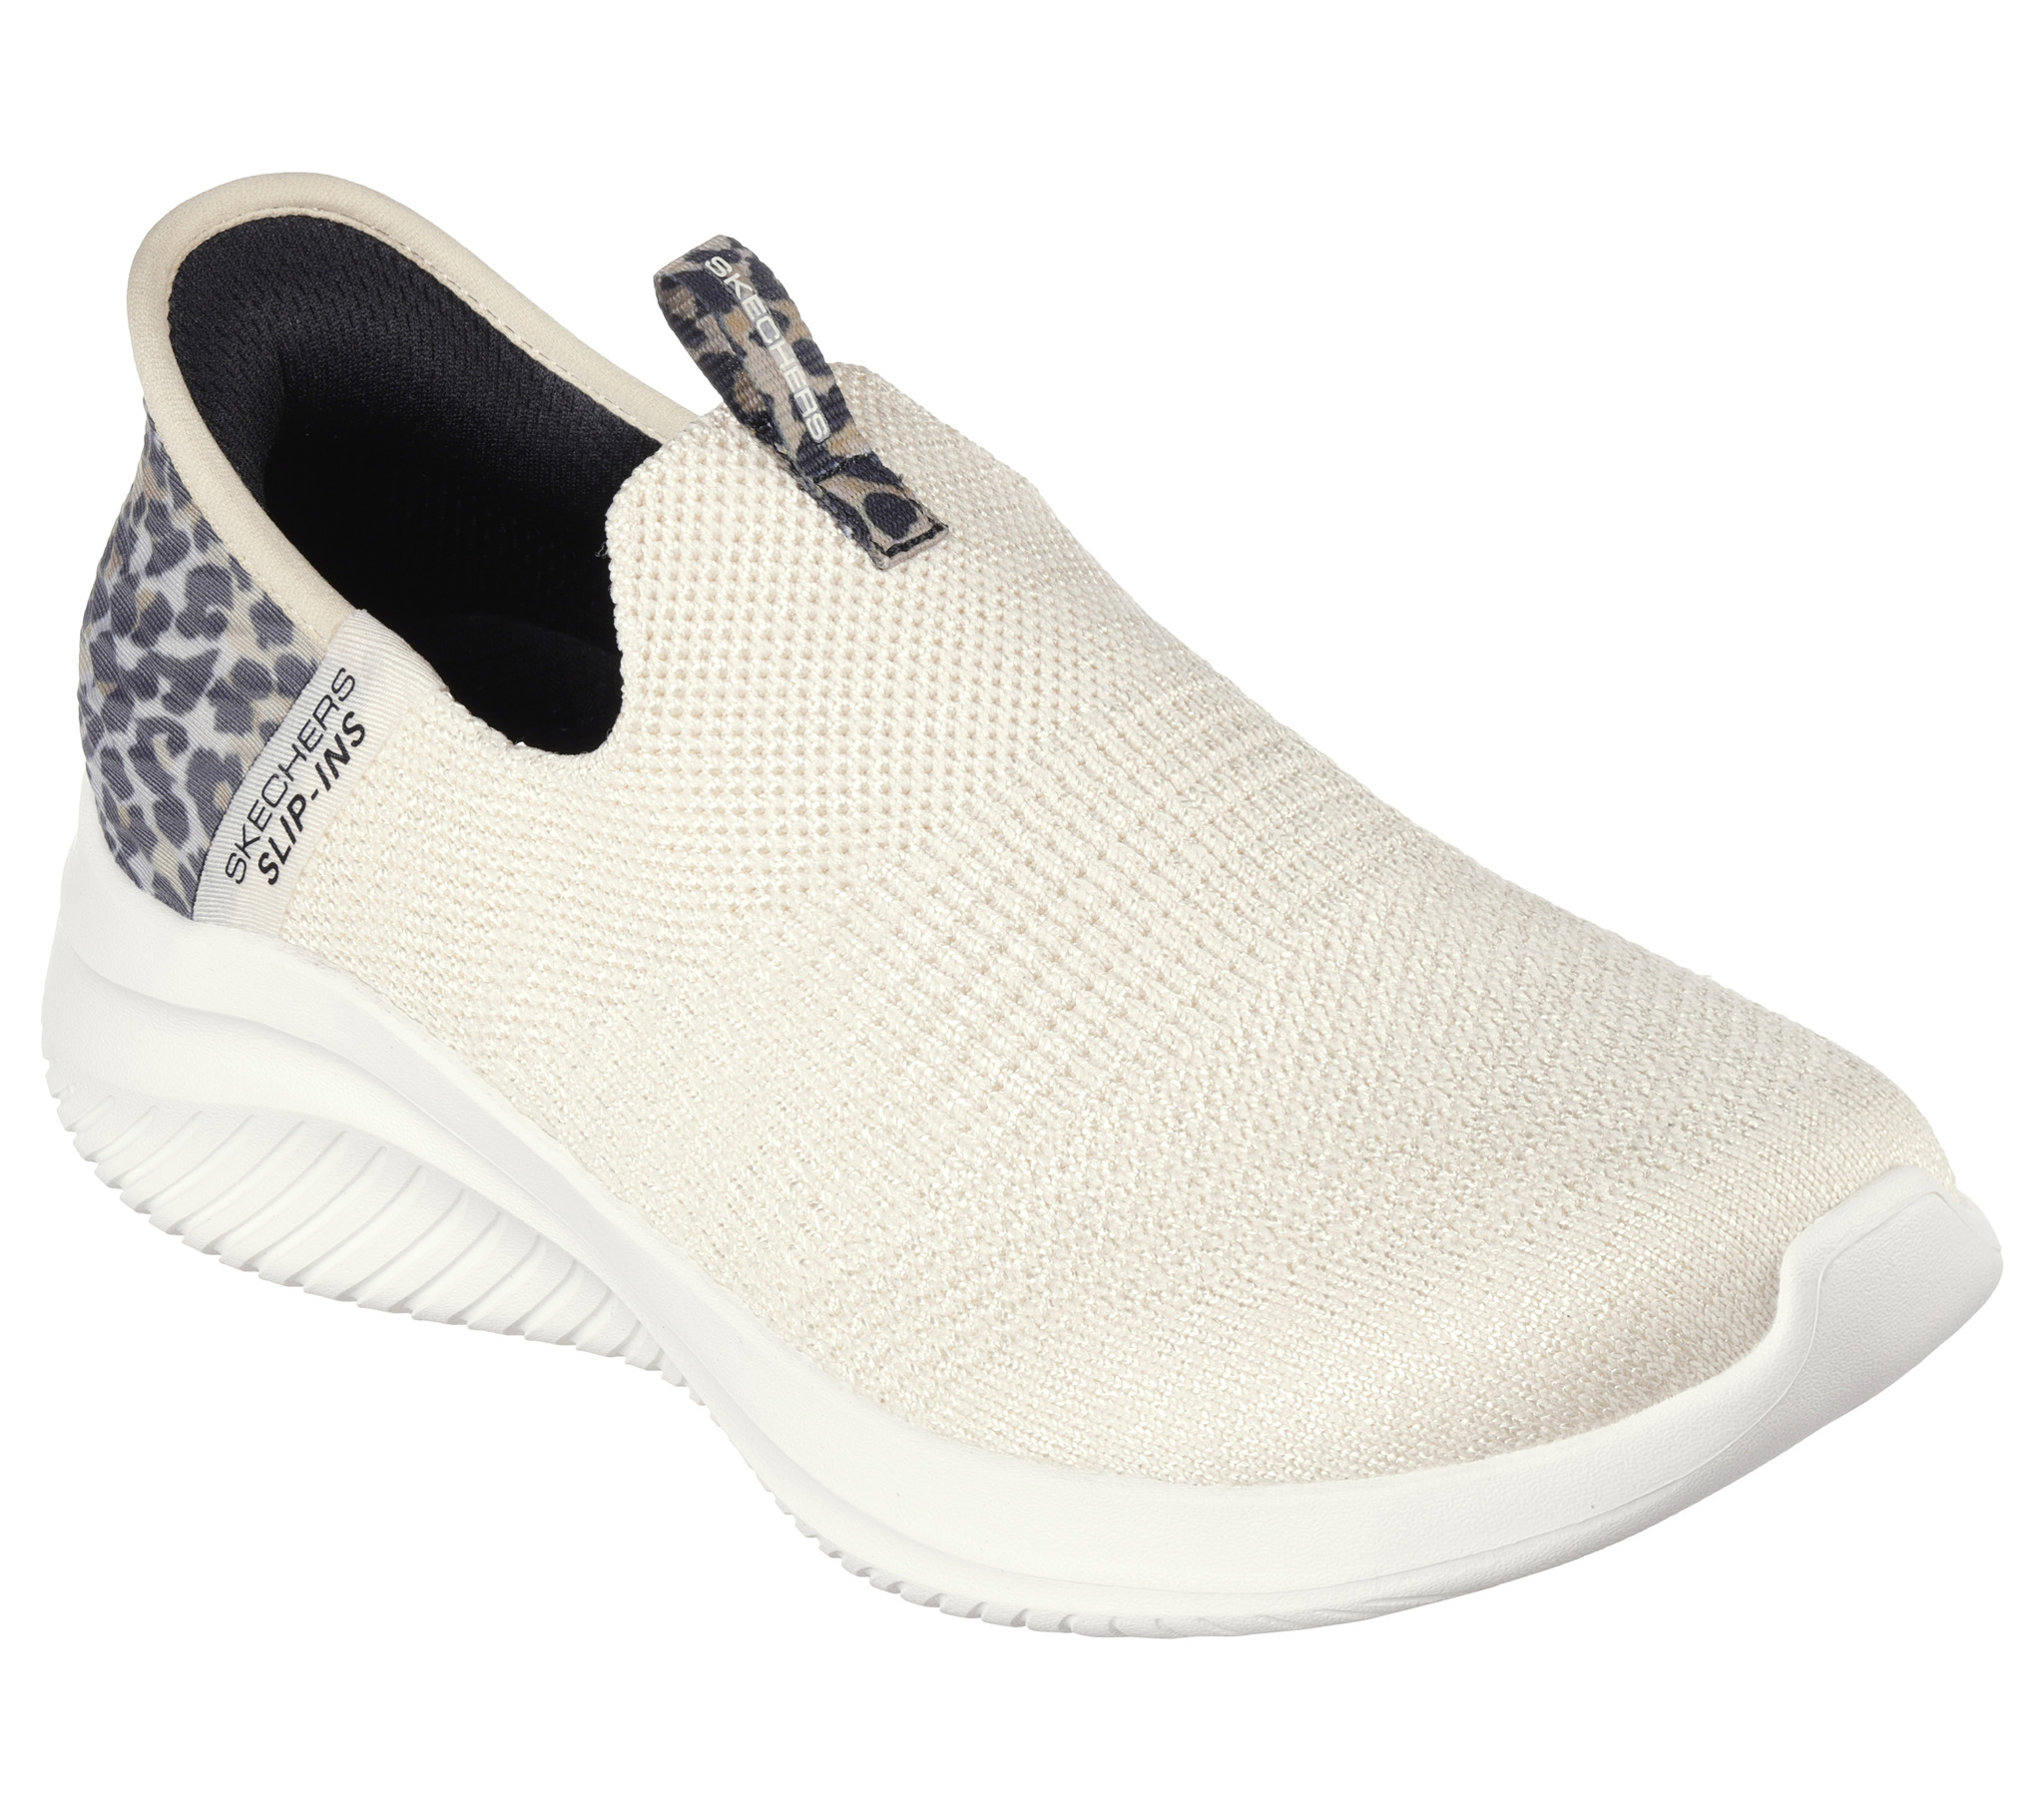 wees gegroet Plons In de naam Skechers Slip-ins Ultra Flex 3.0 beige sneakers dames (149712 LPD) -  outletsportschoenen.nl